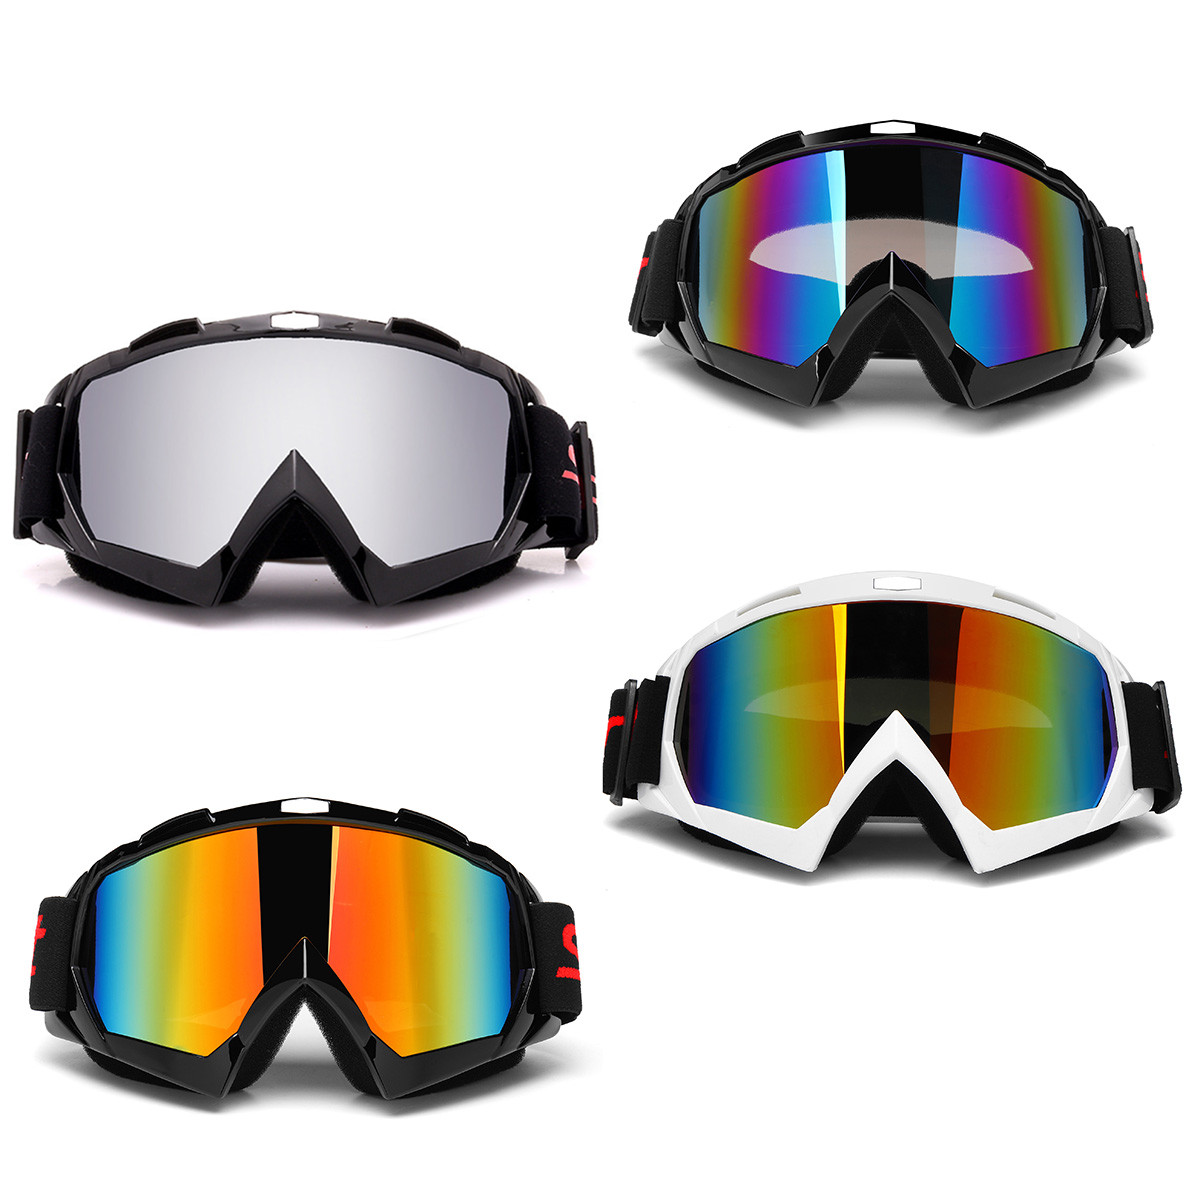 

Двойной Объектив Противотуманные лыжи Сноубординг Sun Snow Ski Goggles мотоцикл UV400